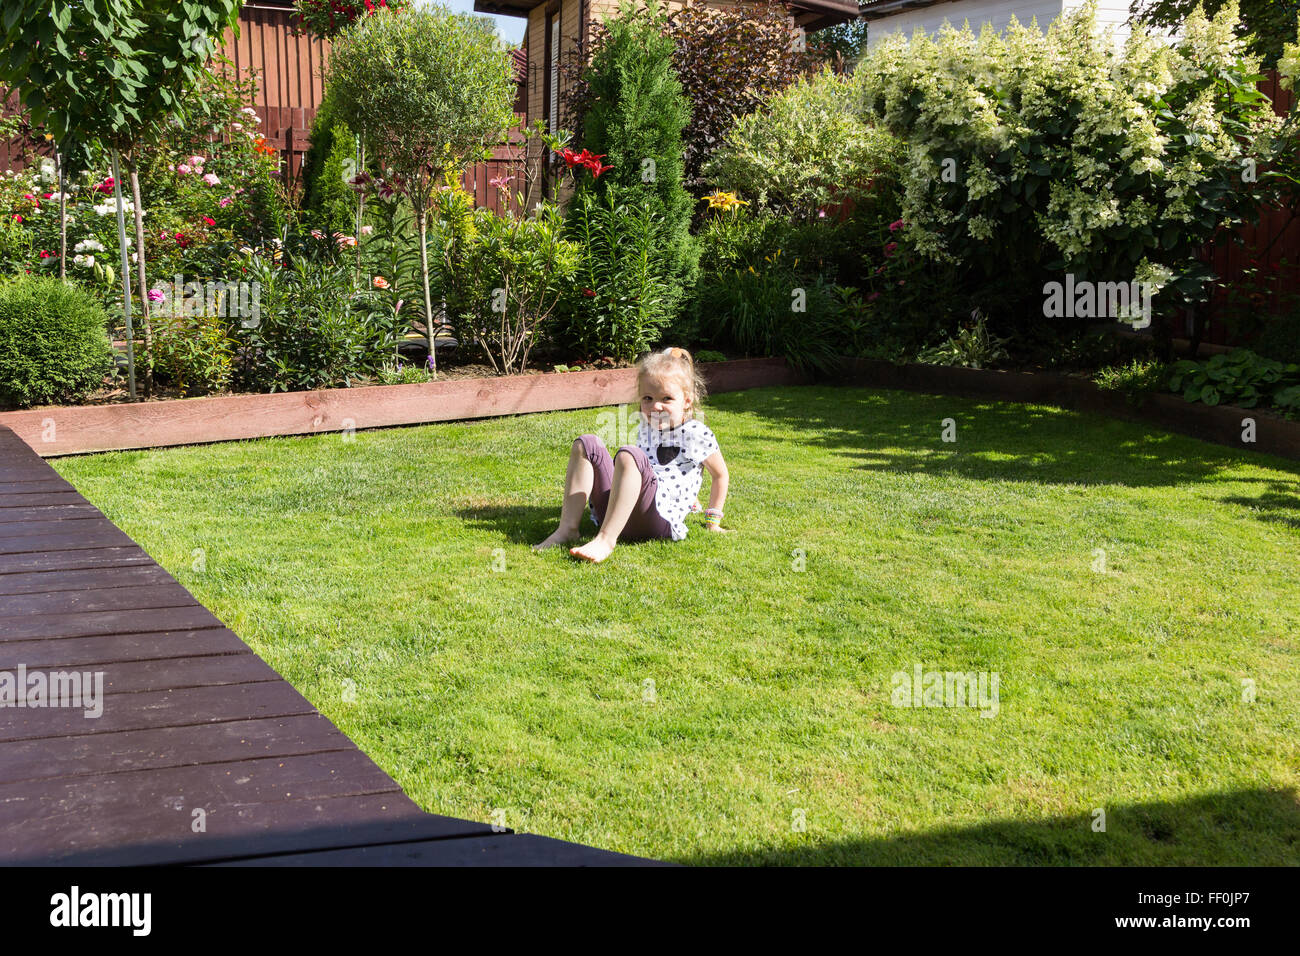 Mädchen spielen auf Rasen in einem schönen Garten Stockfoto